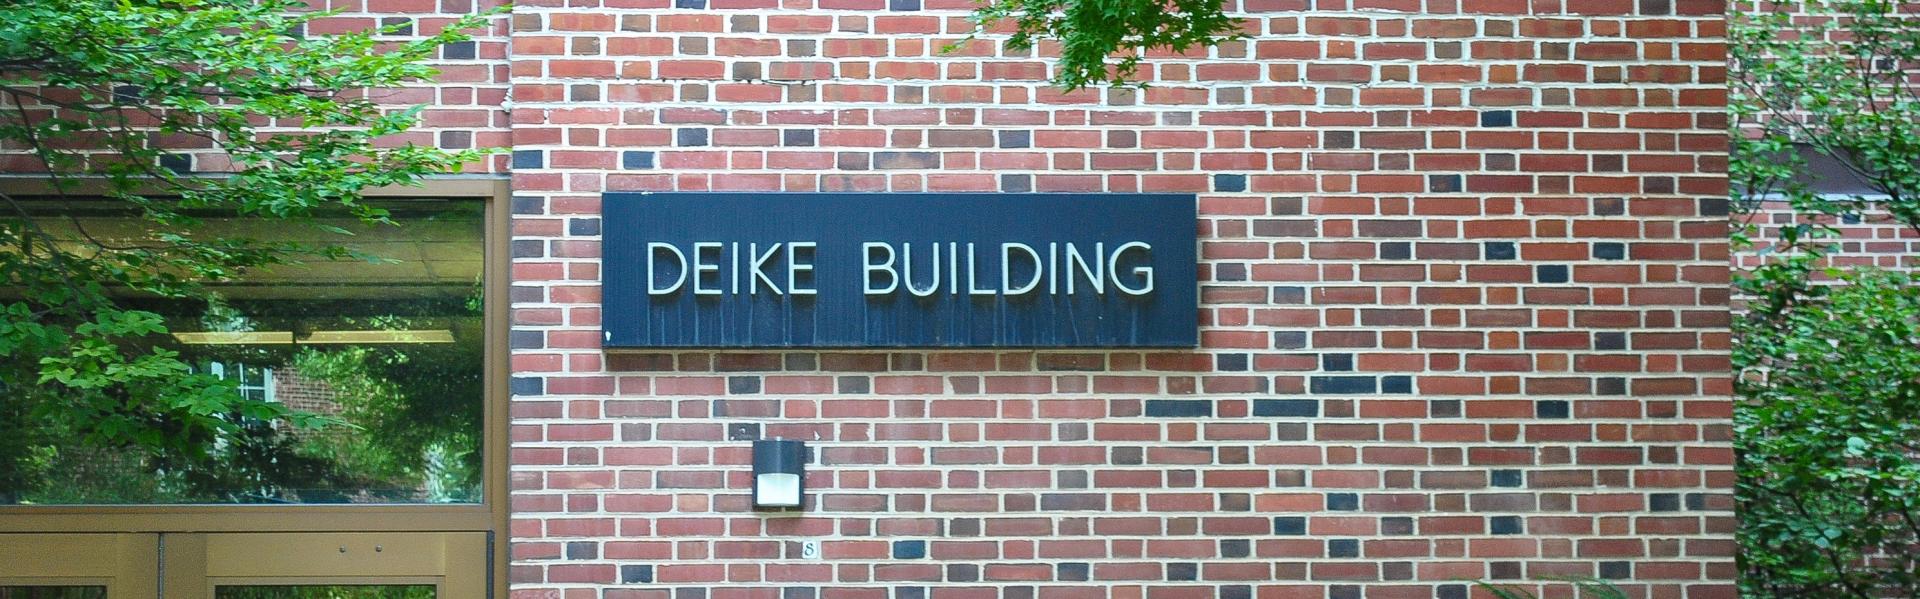 Deike Building